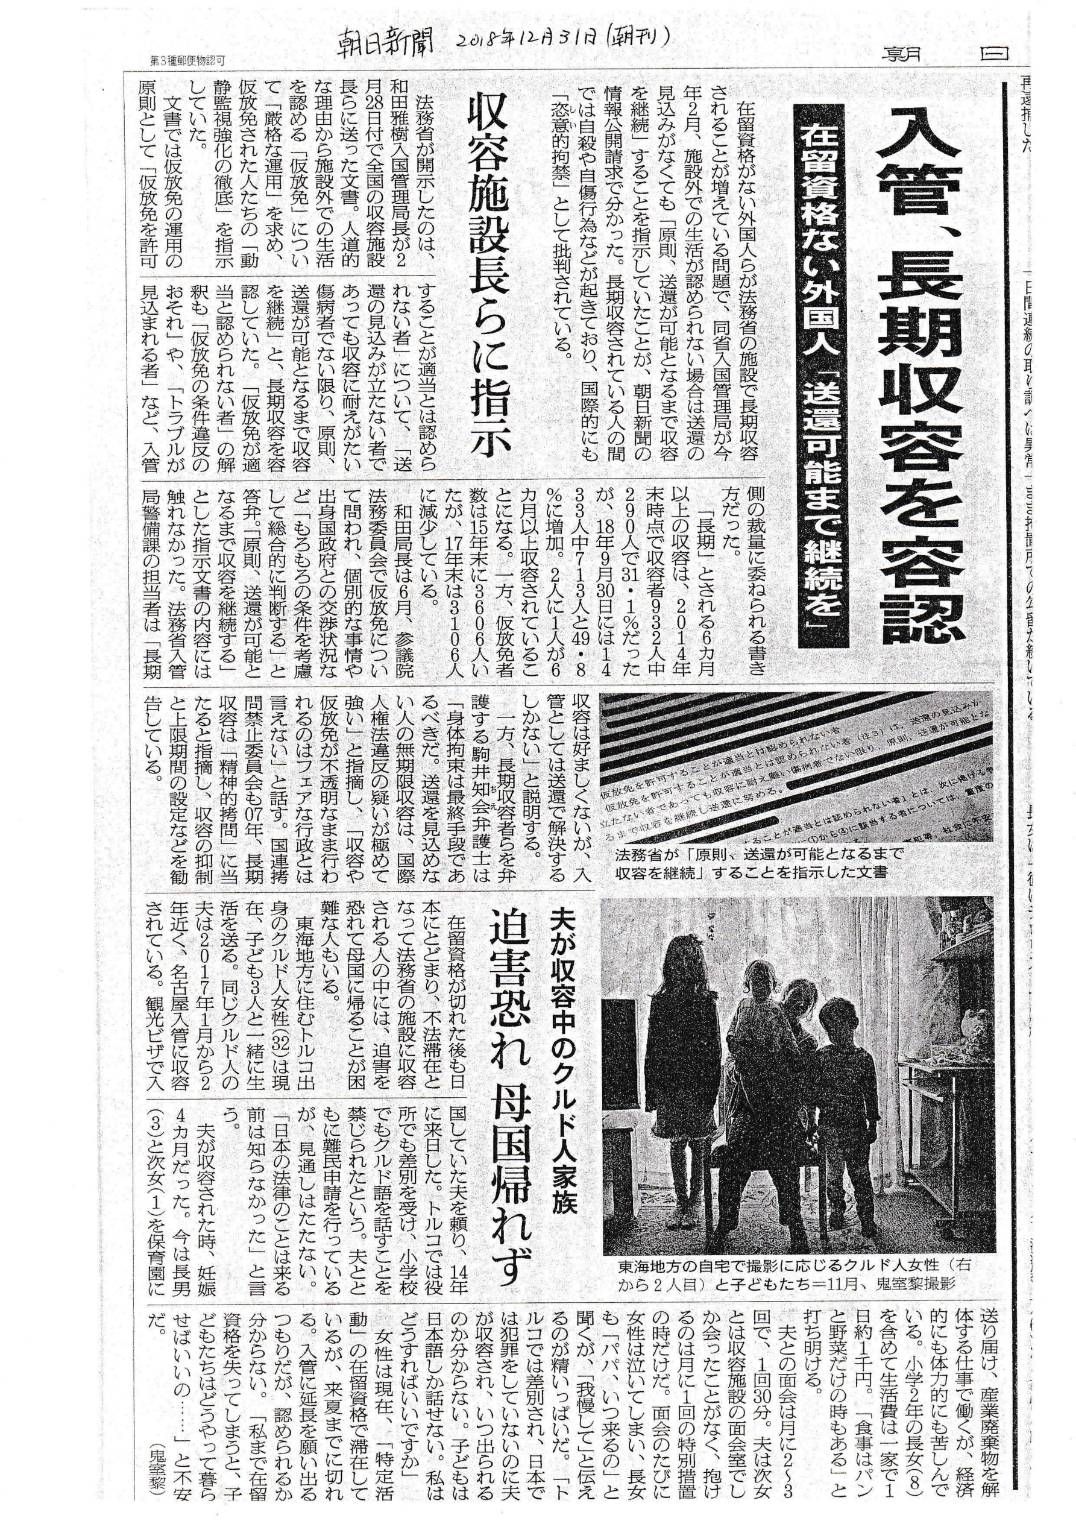 大晦日に朝日新聞で報道 | START～外国人労働者・難民と共に歩む会～